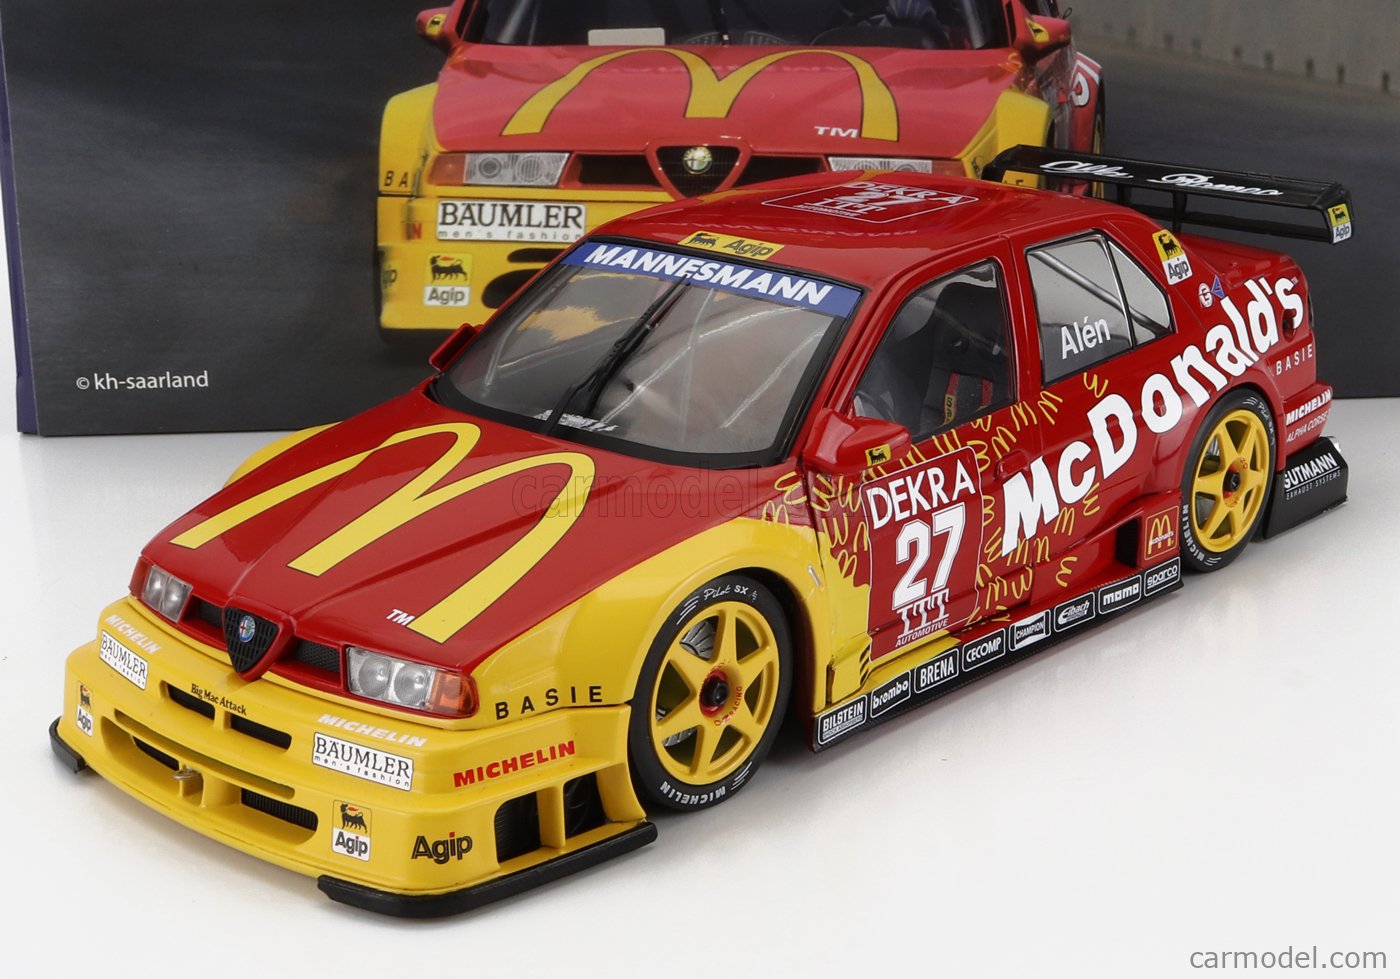 ALFA ROMEO - 155 V6 TI McDONALD'S N 27 DTM ITC RACE THUNDER HELSINKI 1995  M.ALEN